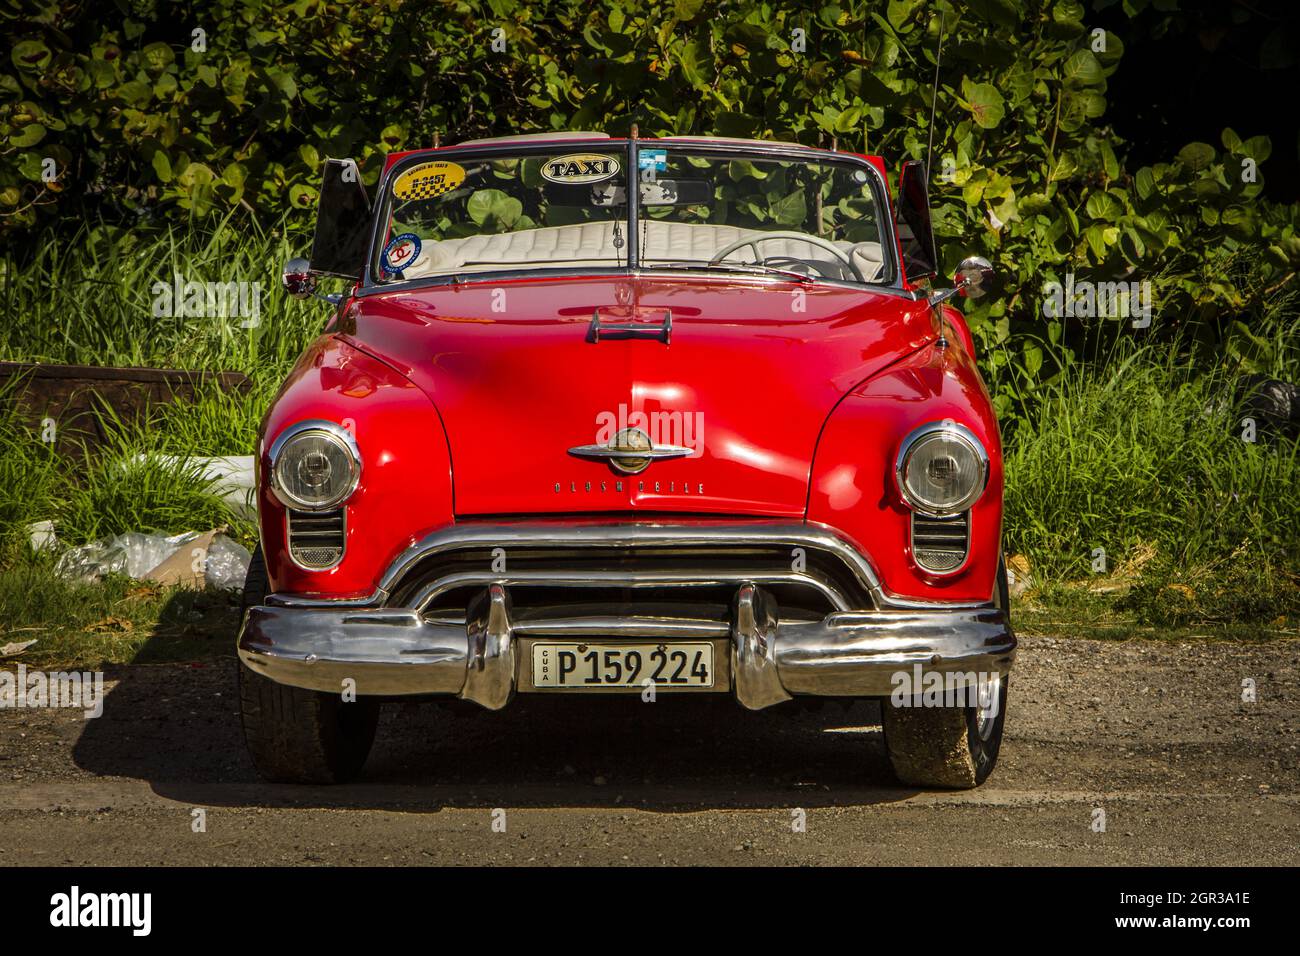 HABANA, CUBA - 11 de agosto de 2017: El coche rojo americano del 50s estacionado en la calle de La Habana. Foto de stock